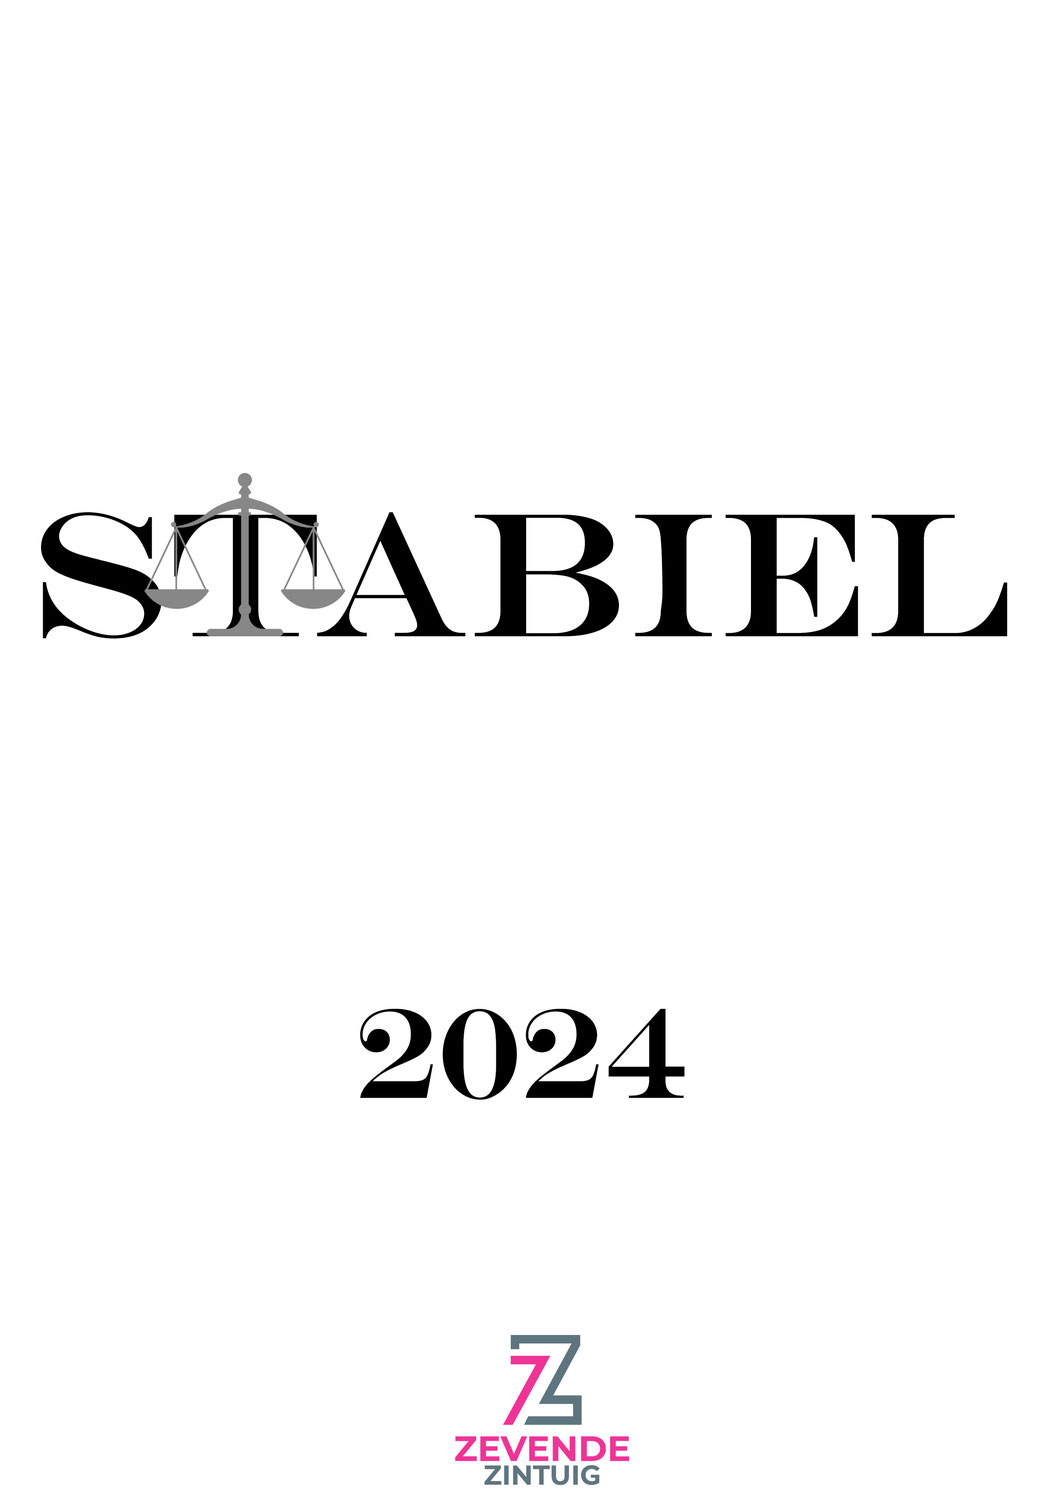 Van start met Stabiel